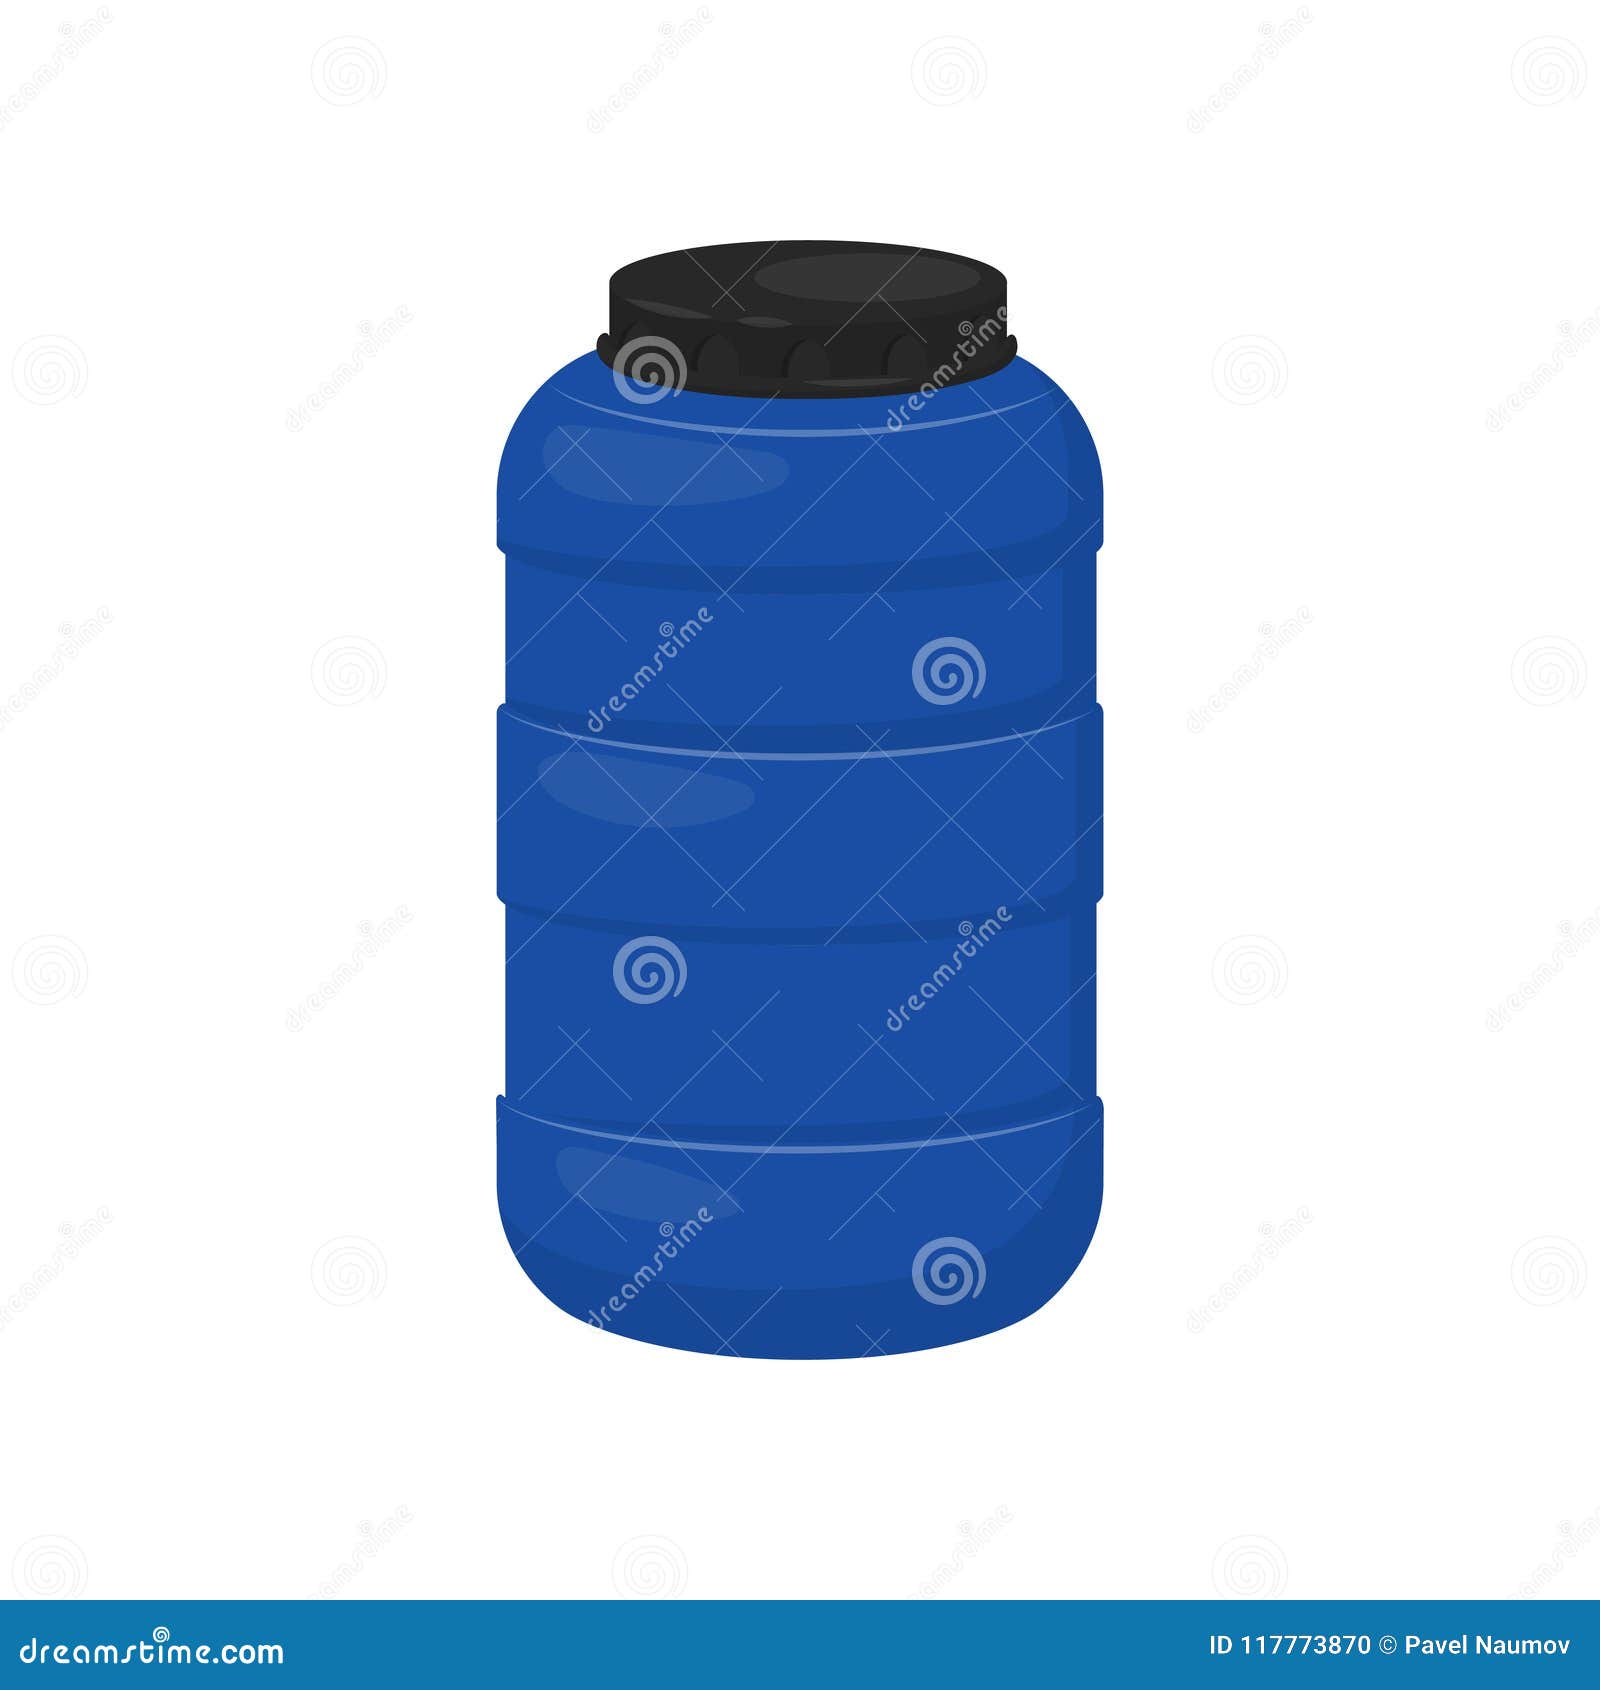 Water Bottle Storage - Blue i Style